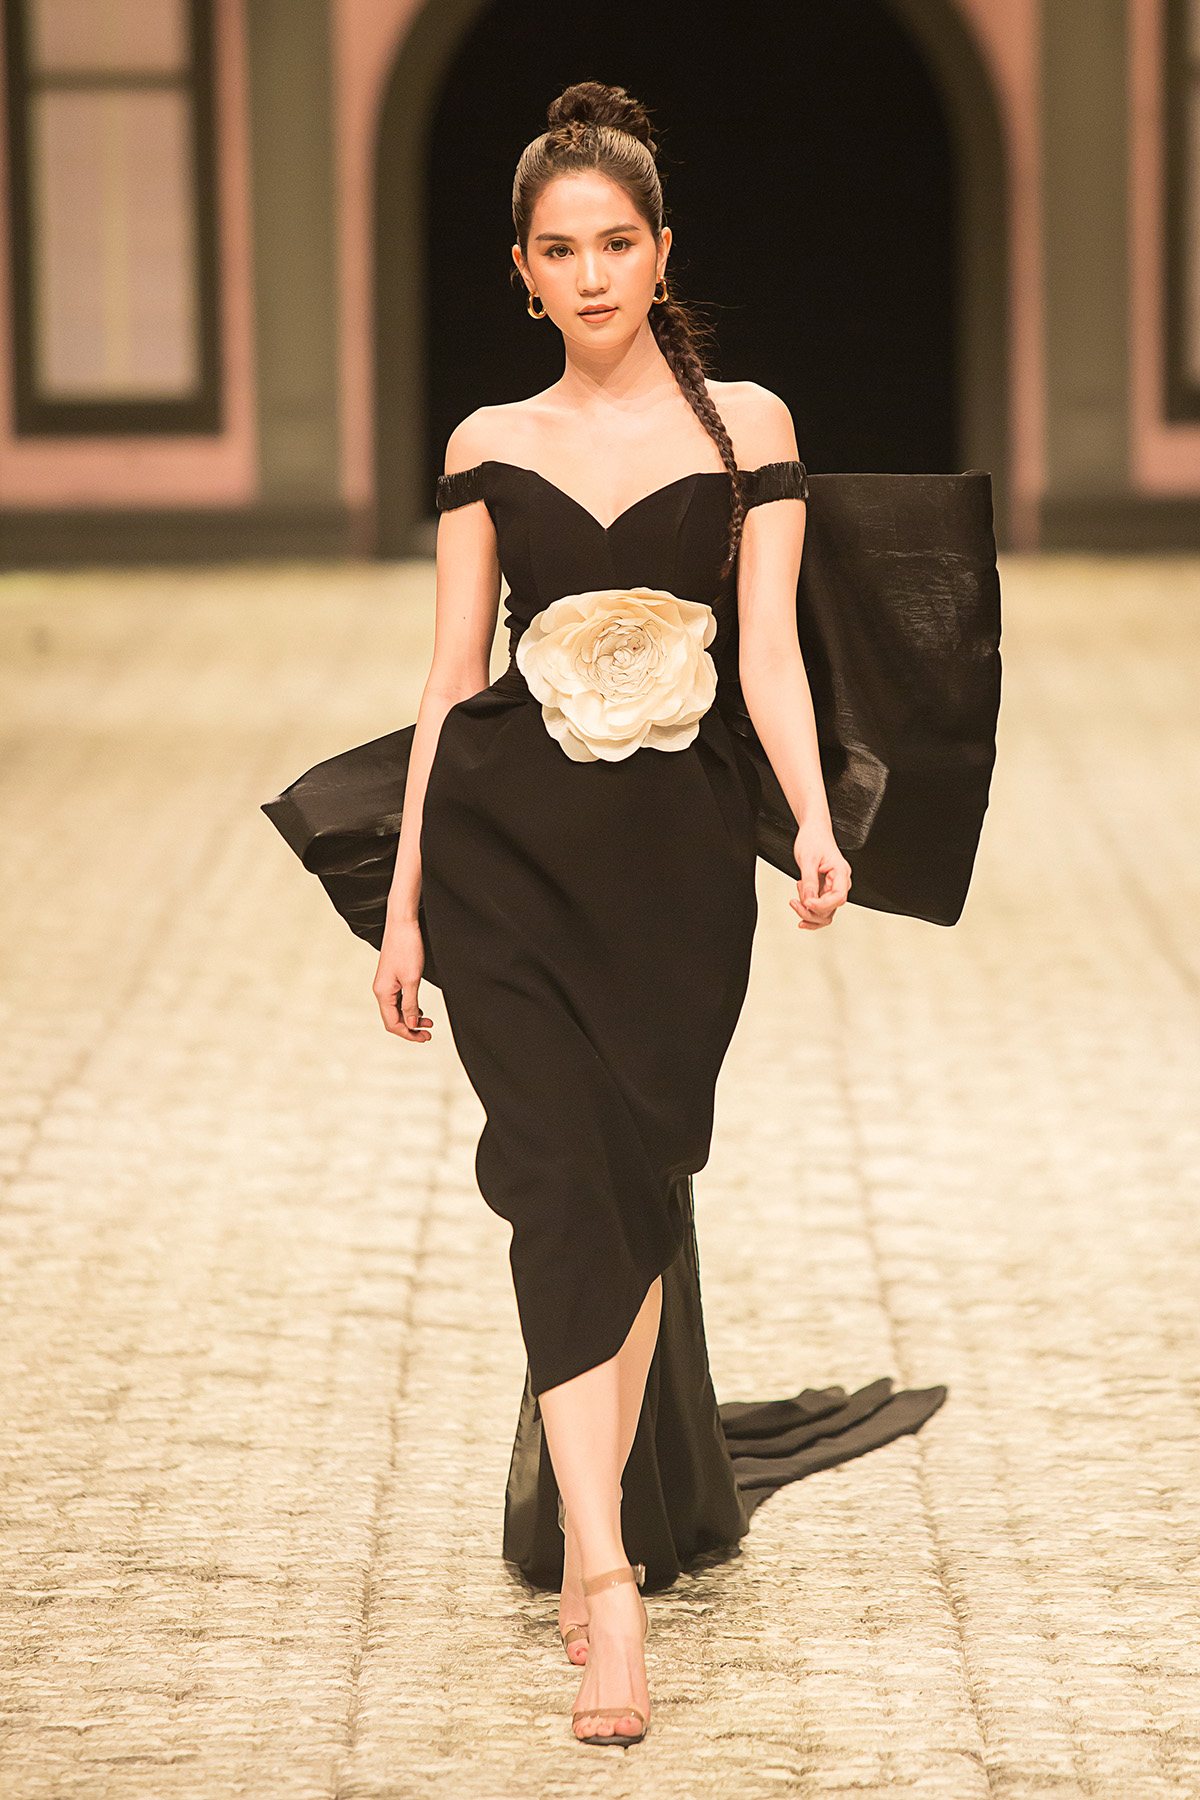 Ngọc Trinh 'chặt đẹp' dàn mẫu chân dài khi làm vedette show IVY moda